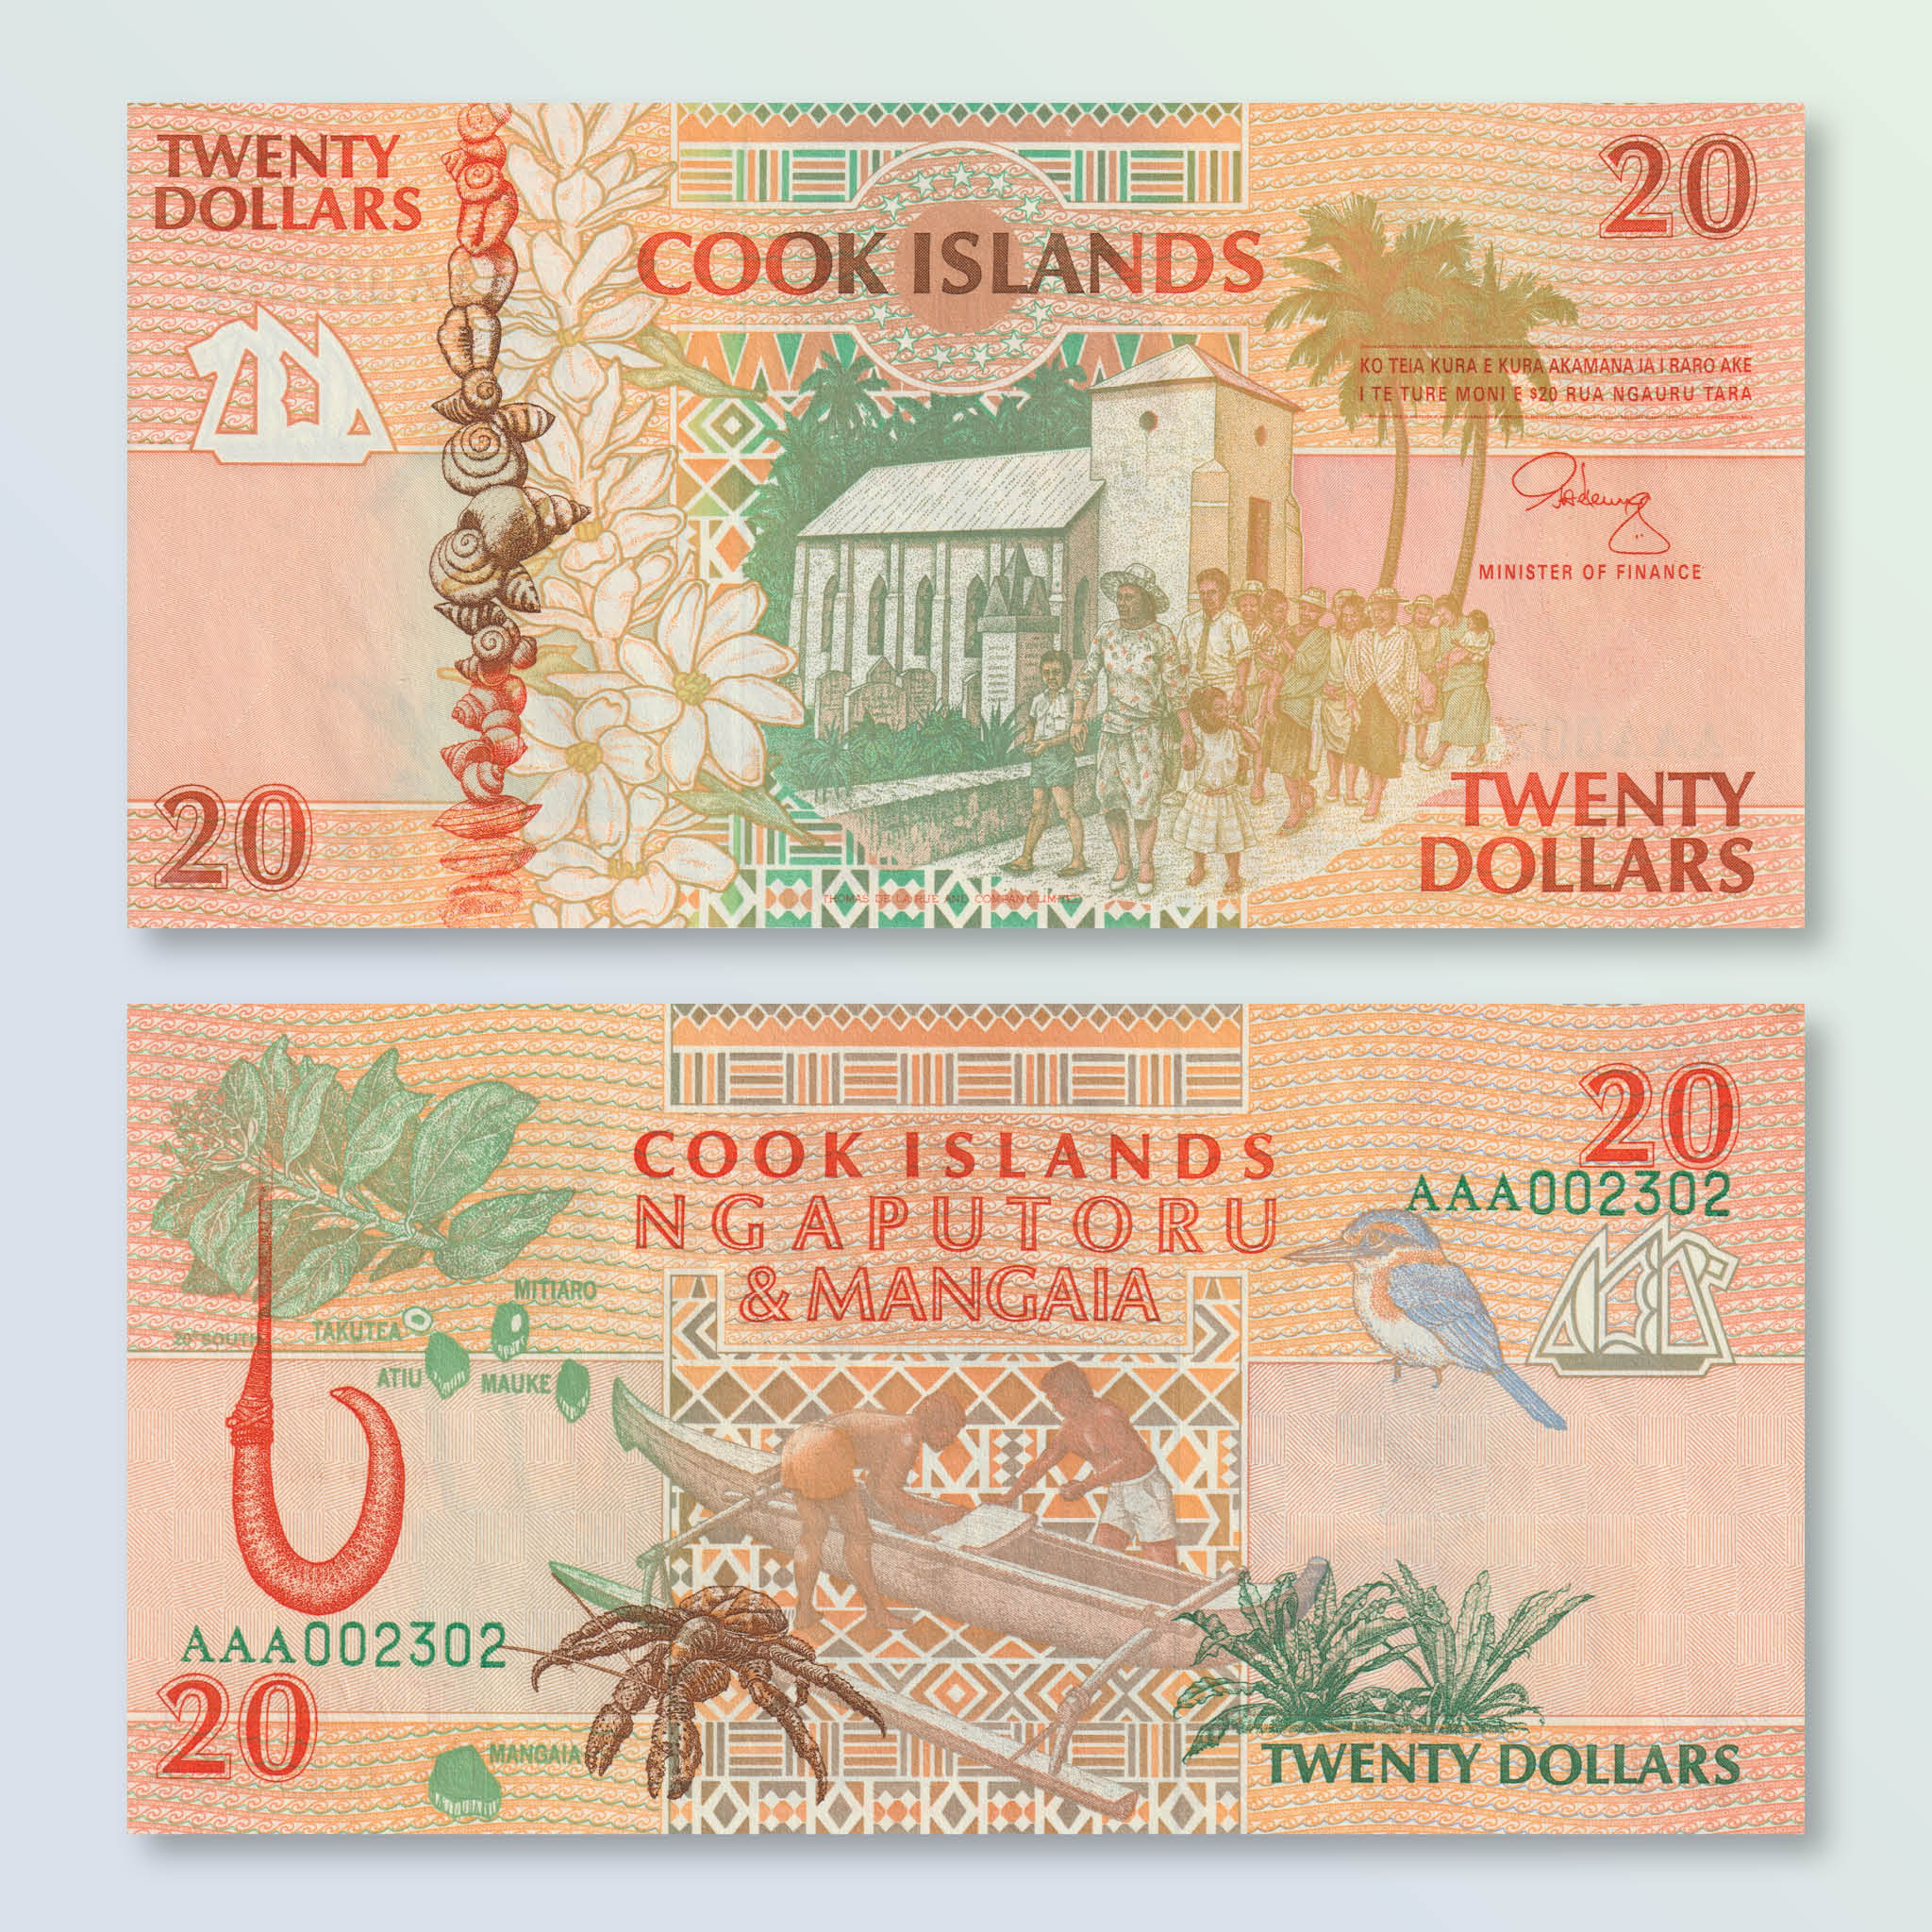 Cook Islands 20 Dollars, 1992, B109a, P9a, UNC - Robert's World Money - World Banknotes